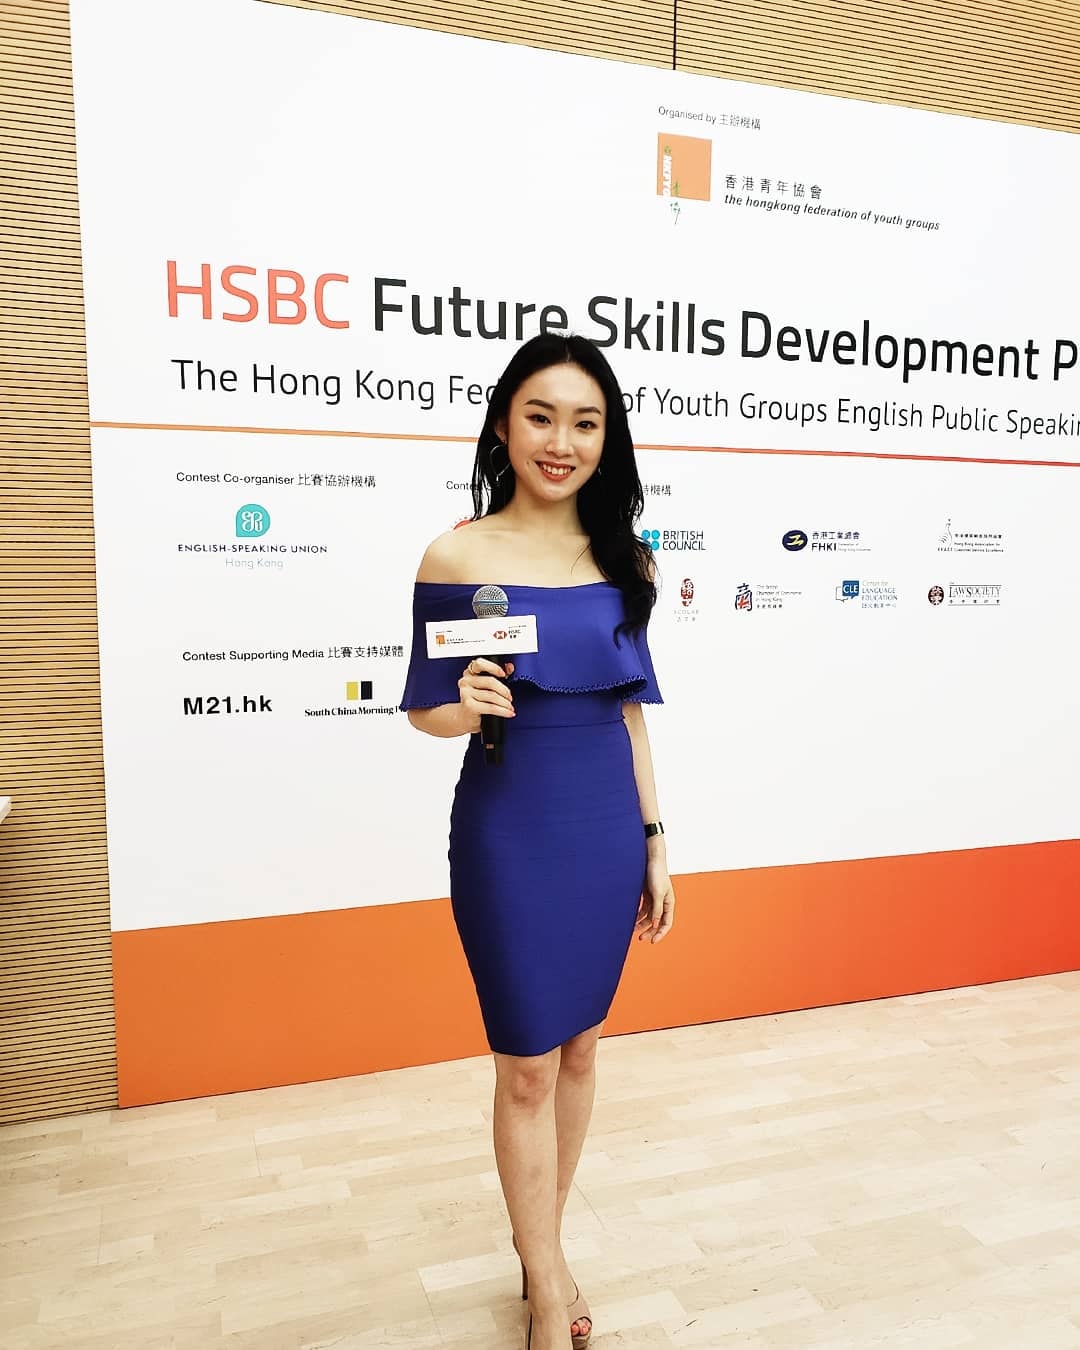 司儀Annissa Choi工作紀錄: 活動主持 | HSBC Future Skills Development Project and The HKFYG English Public Speaking Contest 2019